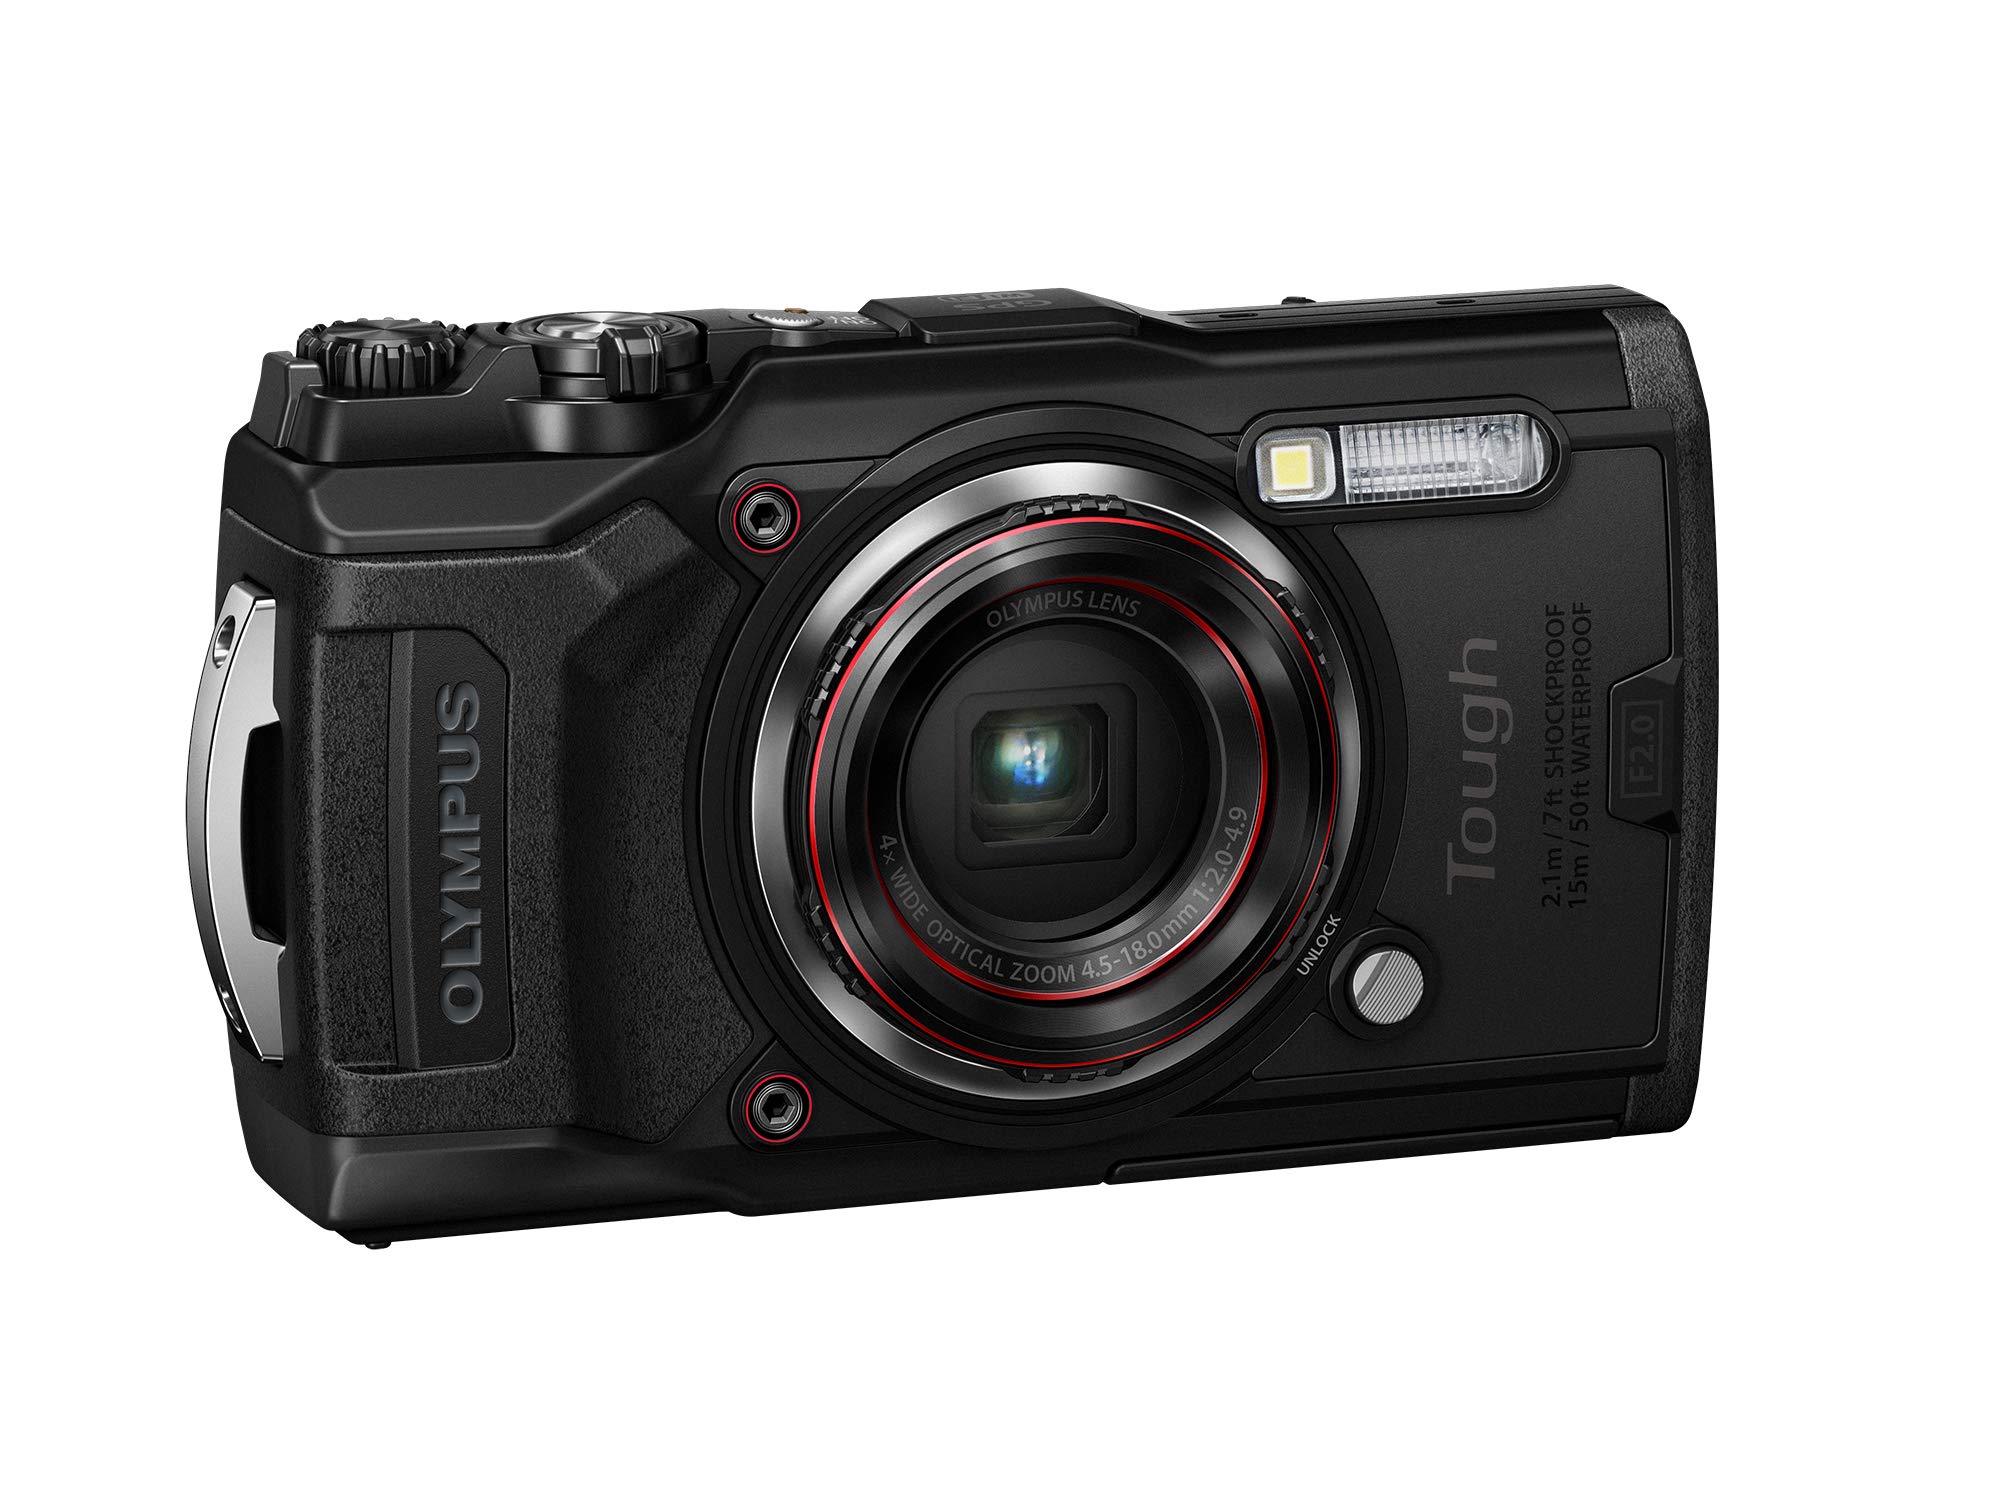 OM System Olympus TG-6 Black Underwater camera, Waterproof, Freeze proof, High Resolution Bright, 4K Video 44x Macro shooting